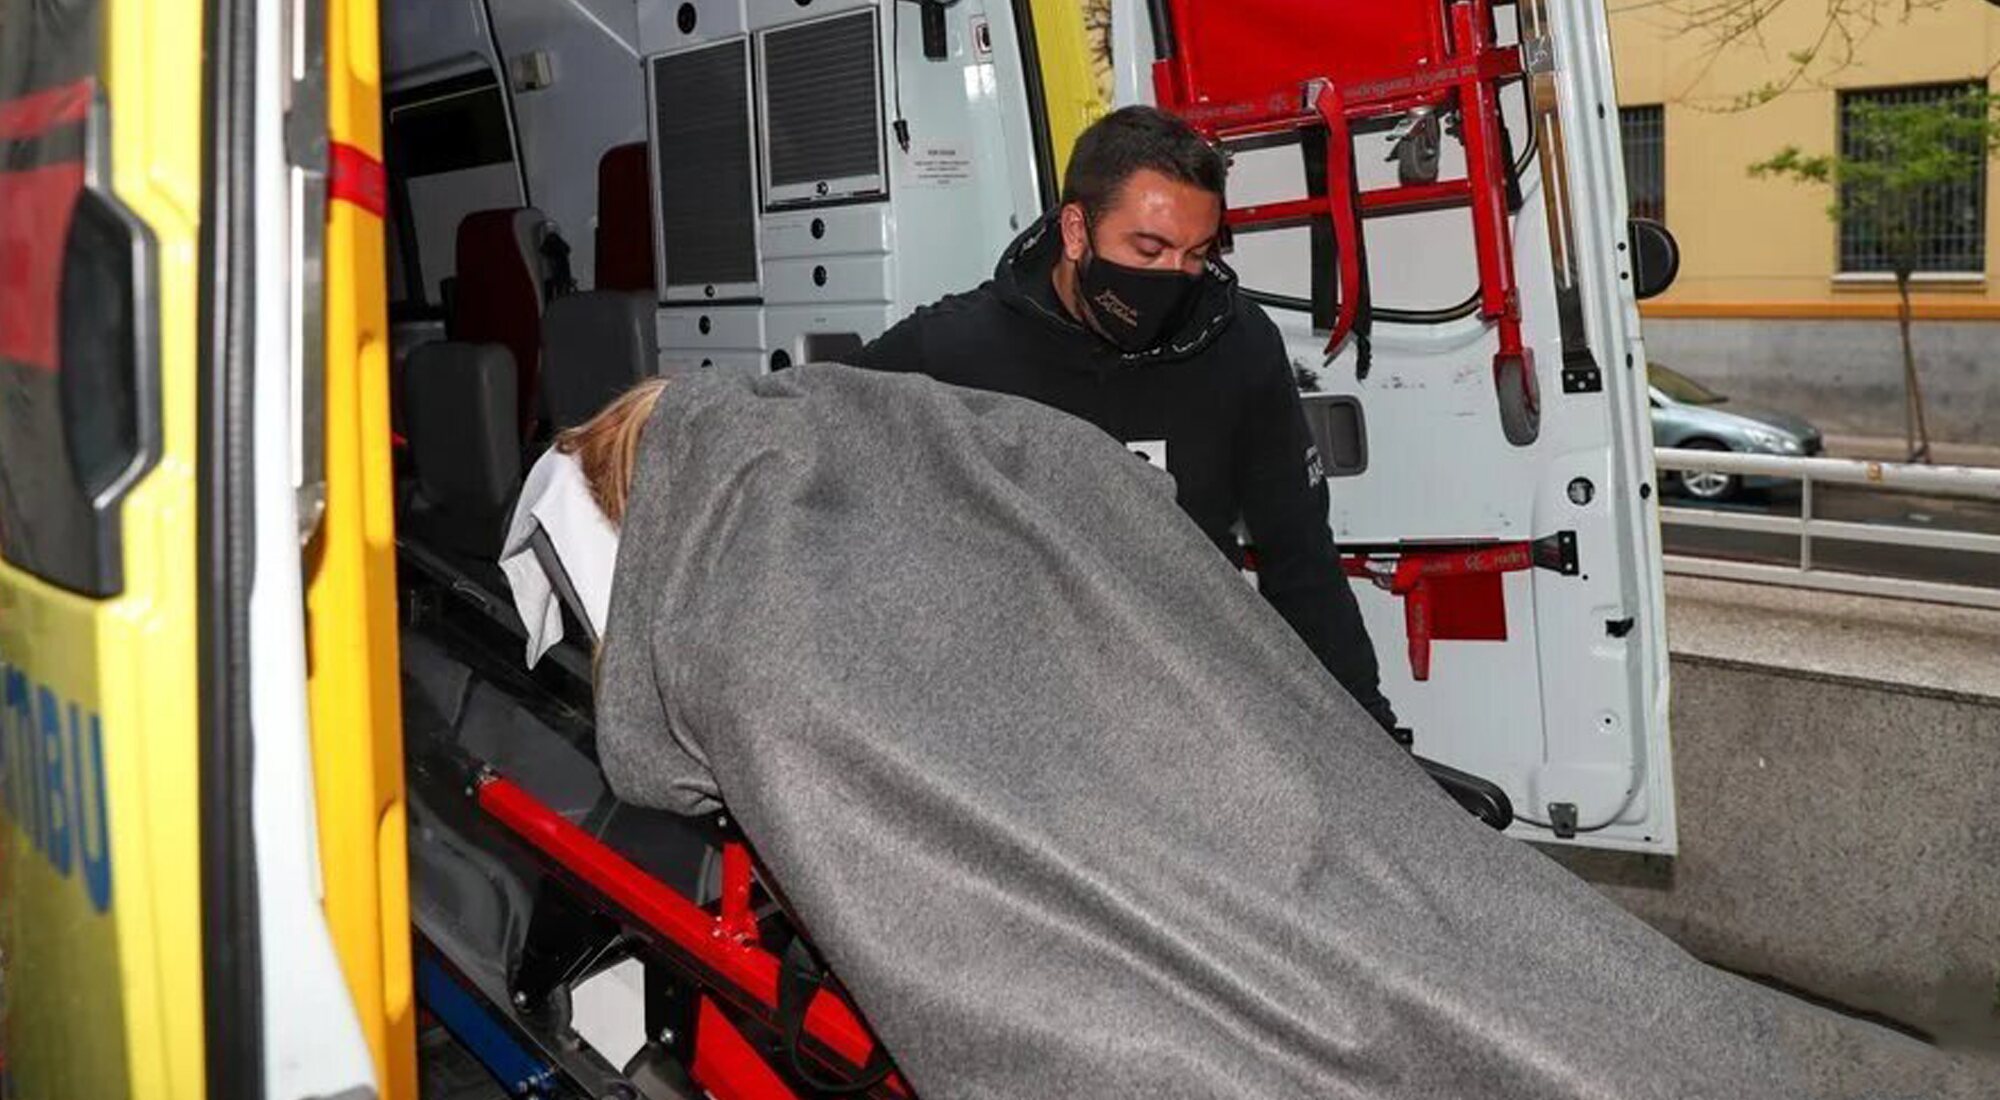 Belén Esteban, oculta por una manta, a su llegada al hospital junto a su marido